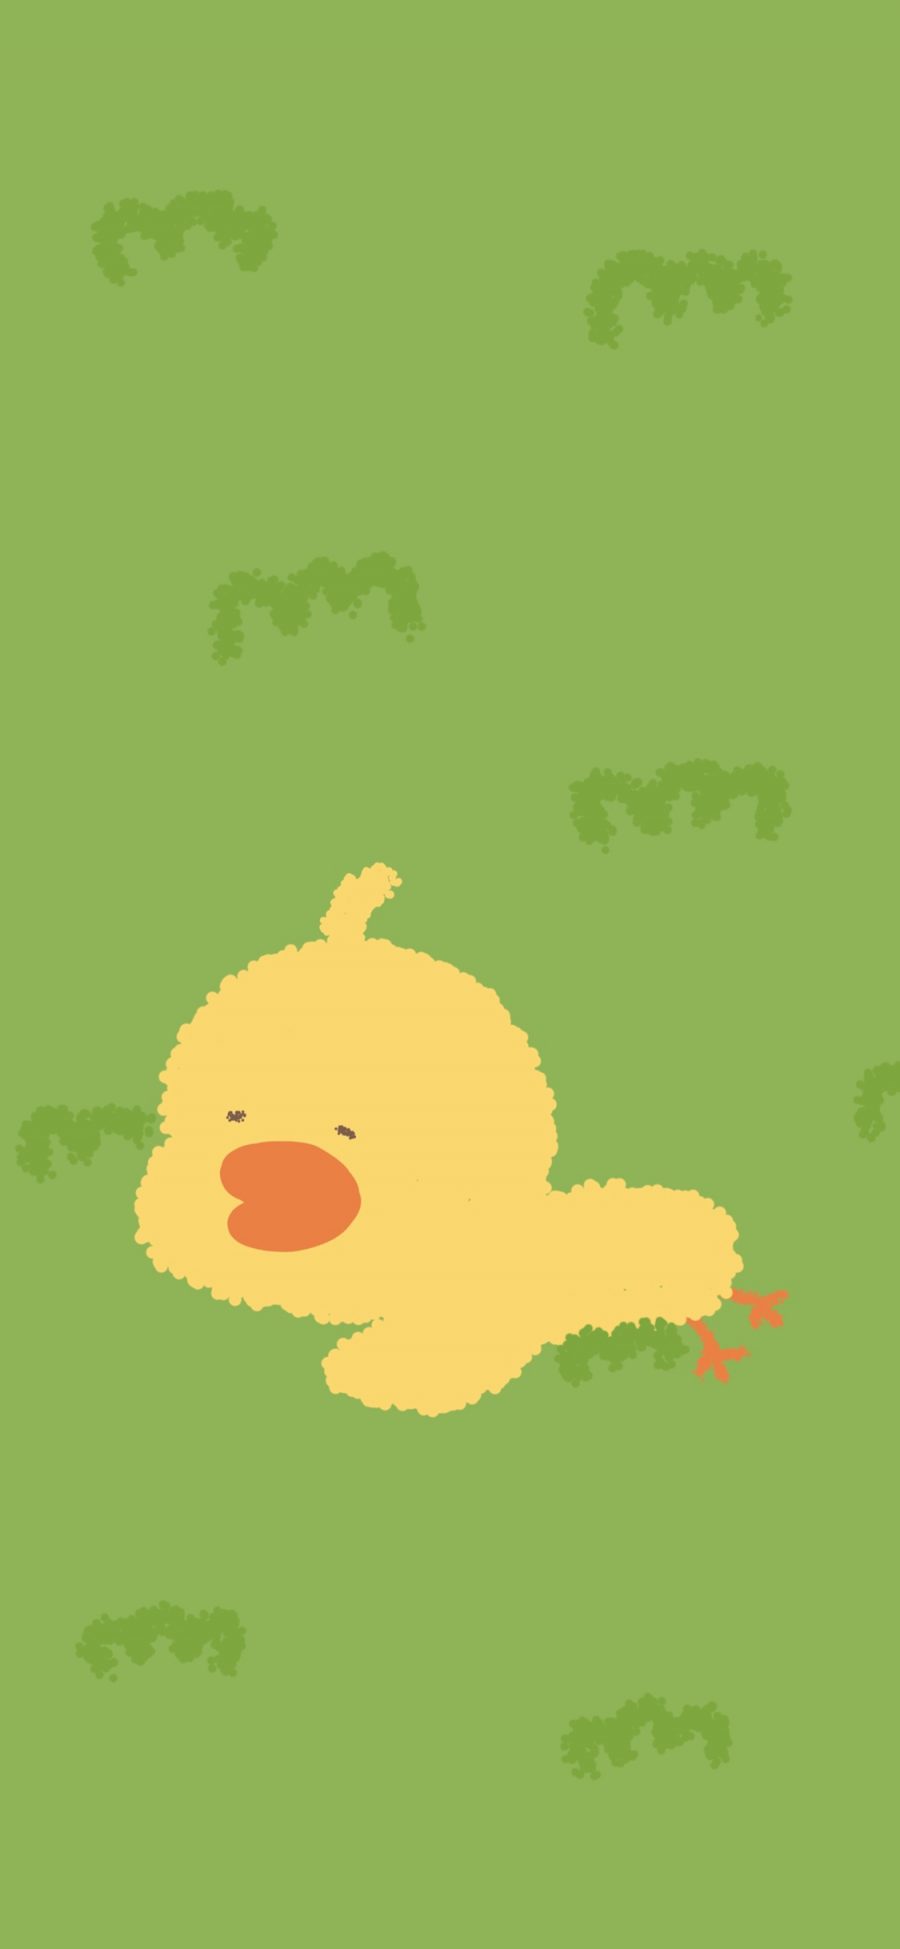 [2436×1125]可爱 小黄鸭 草地 卡通 苹果手机动漫壁纸图片